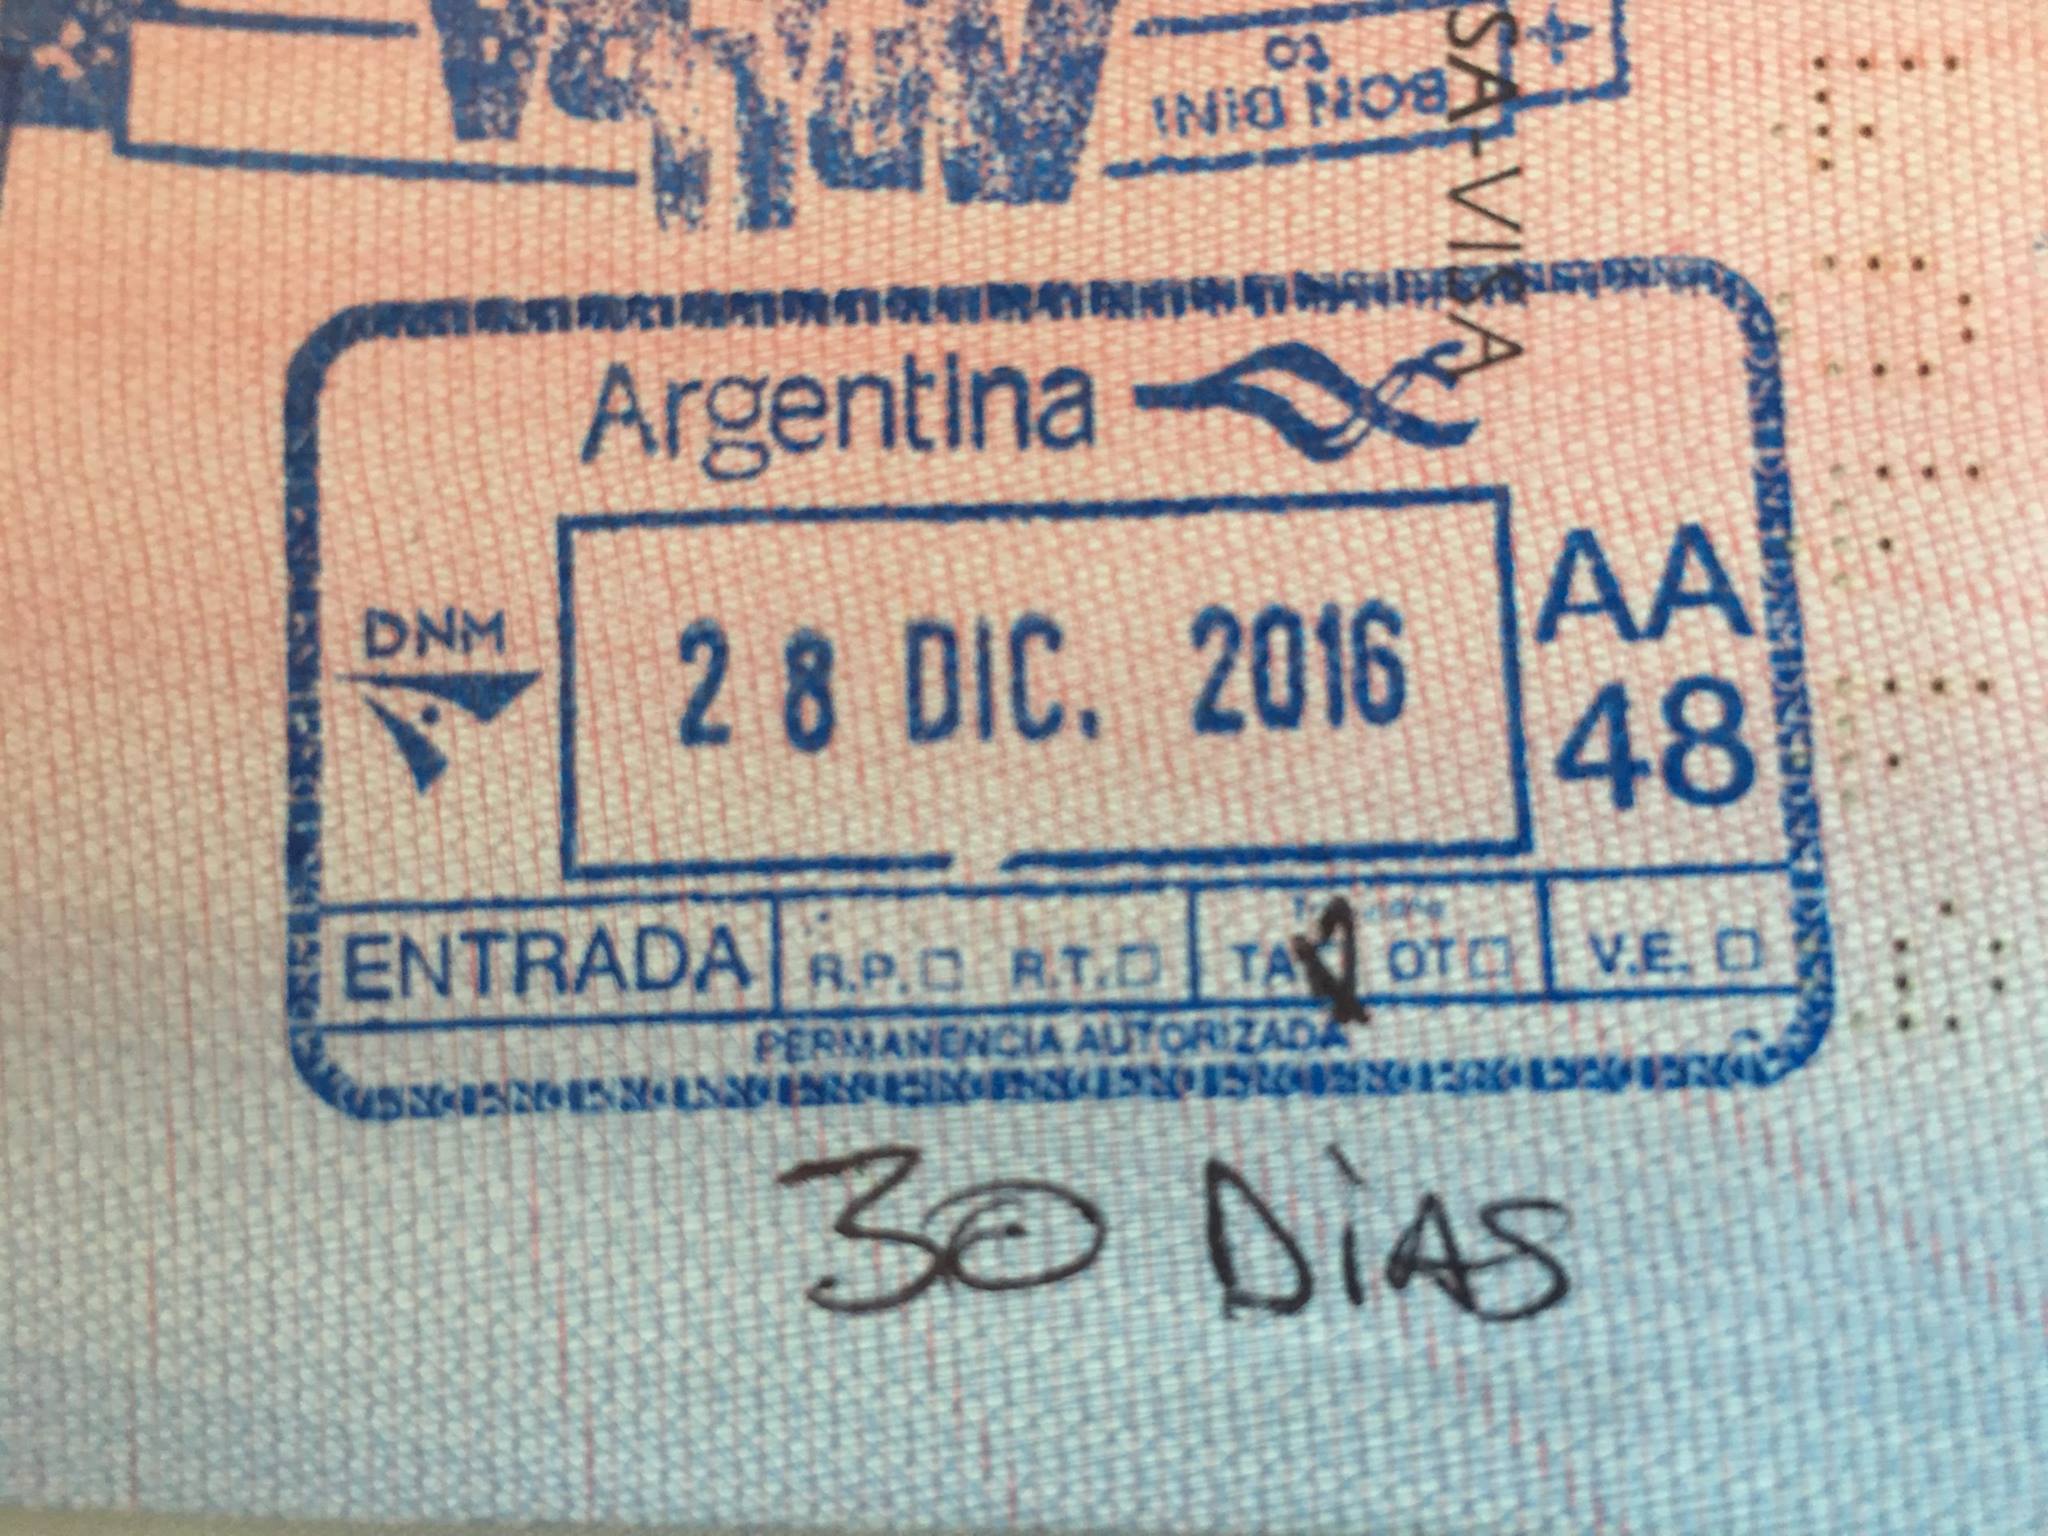 argentina tourist visa for filipino